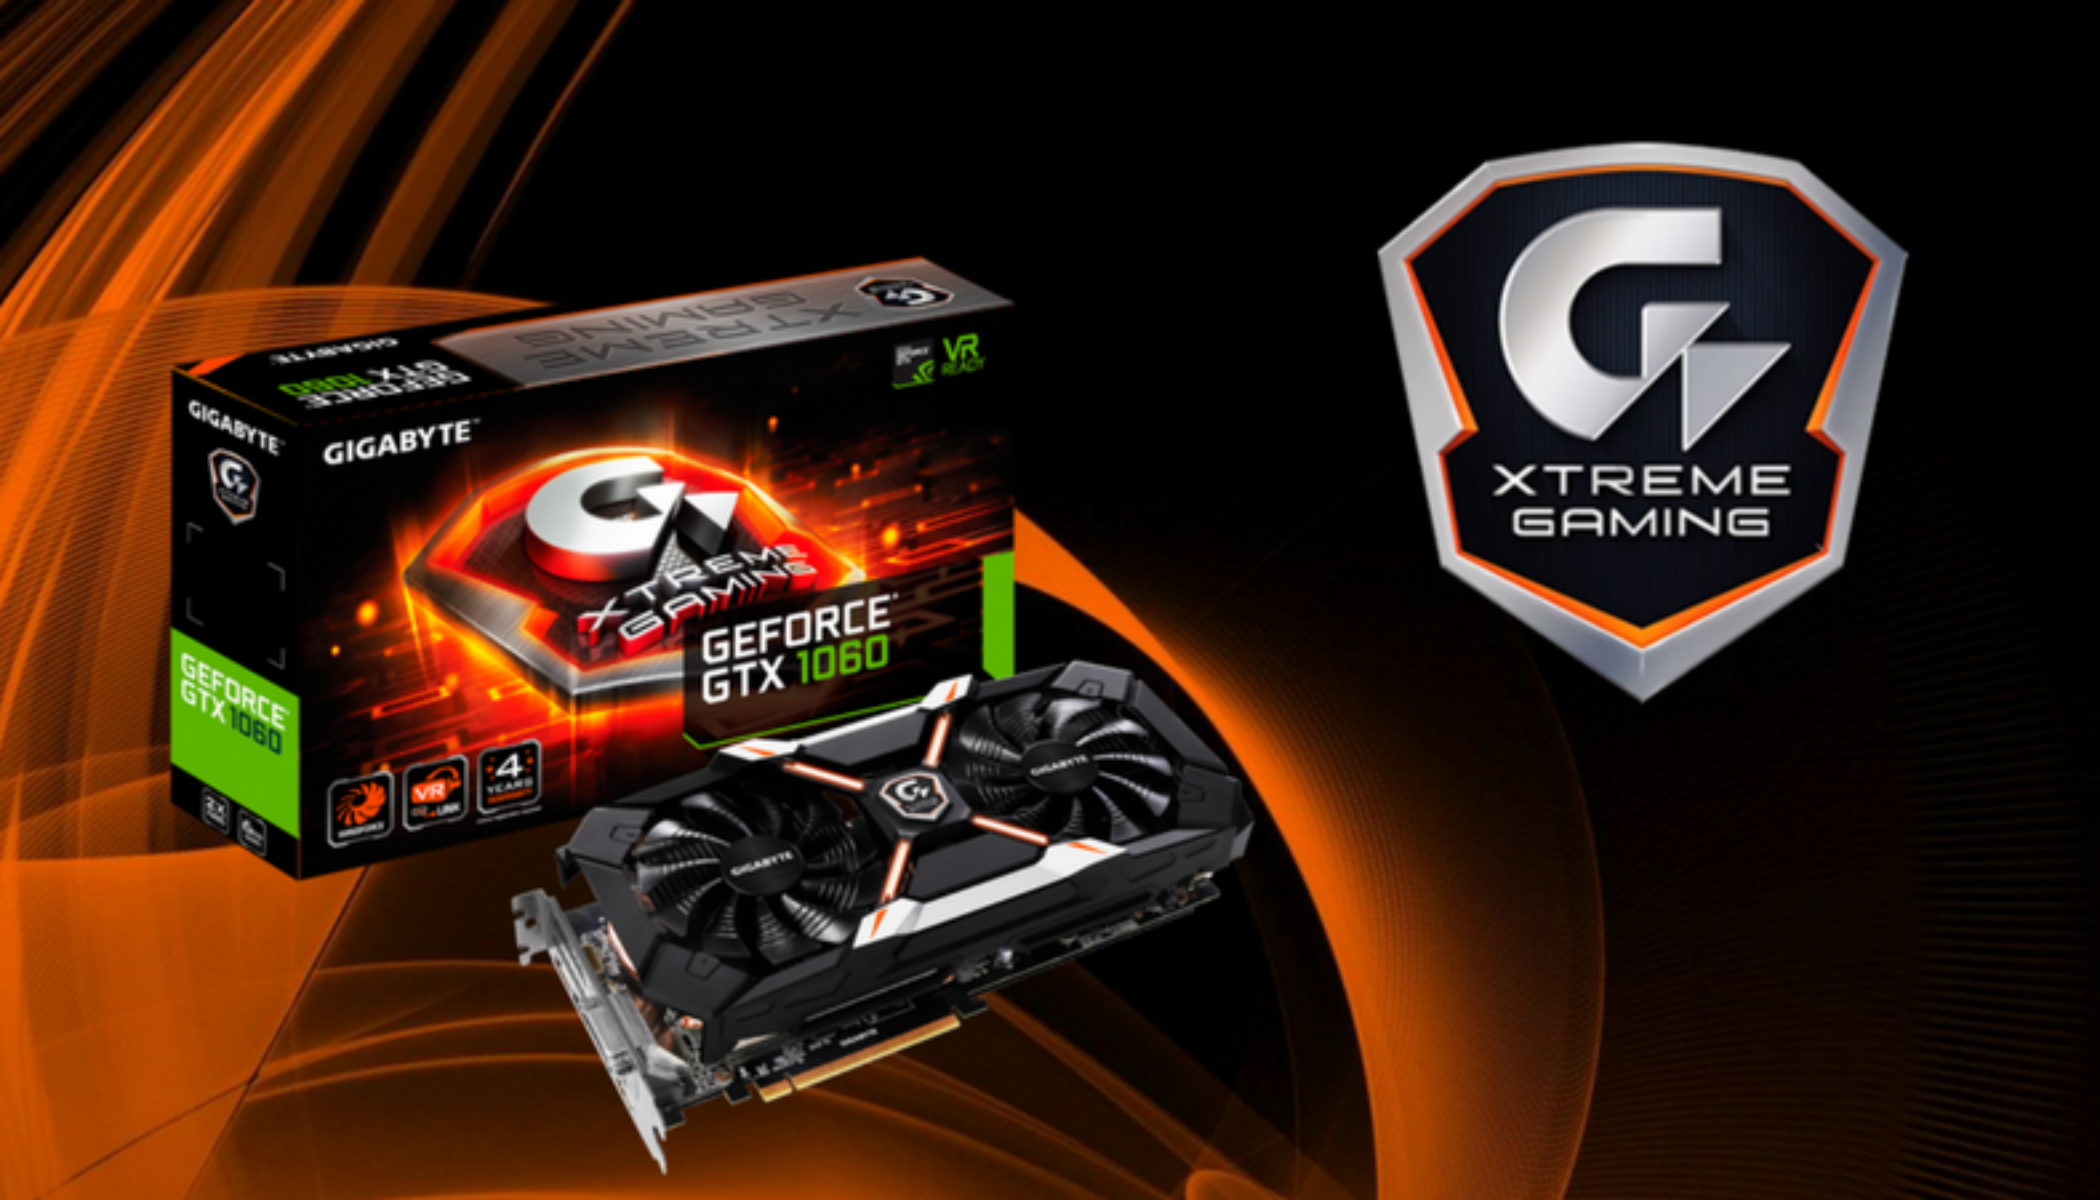 GTX 1060 Xtreme Gaming 6g. Gigabyte GEFORCE GTX 1060 Xtreme Gaming. 1060 6 ГБ Xtreme. GTX 1060 extreme Gaming 6g. Gigabyte 1060 6gb gaming